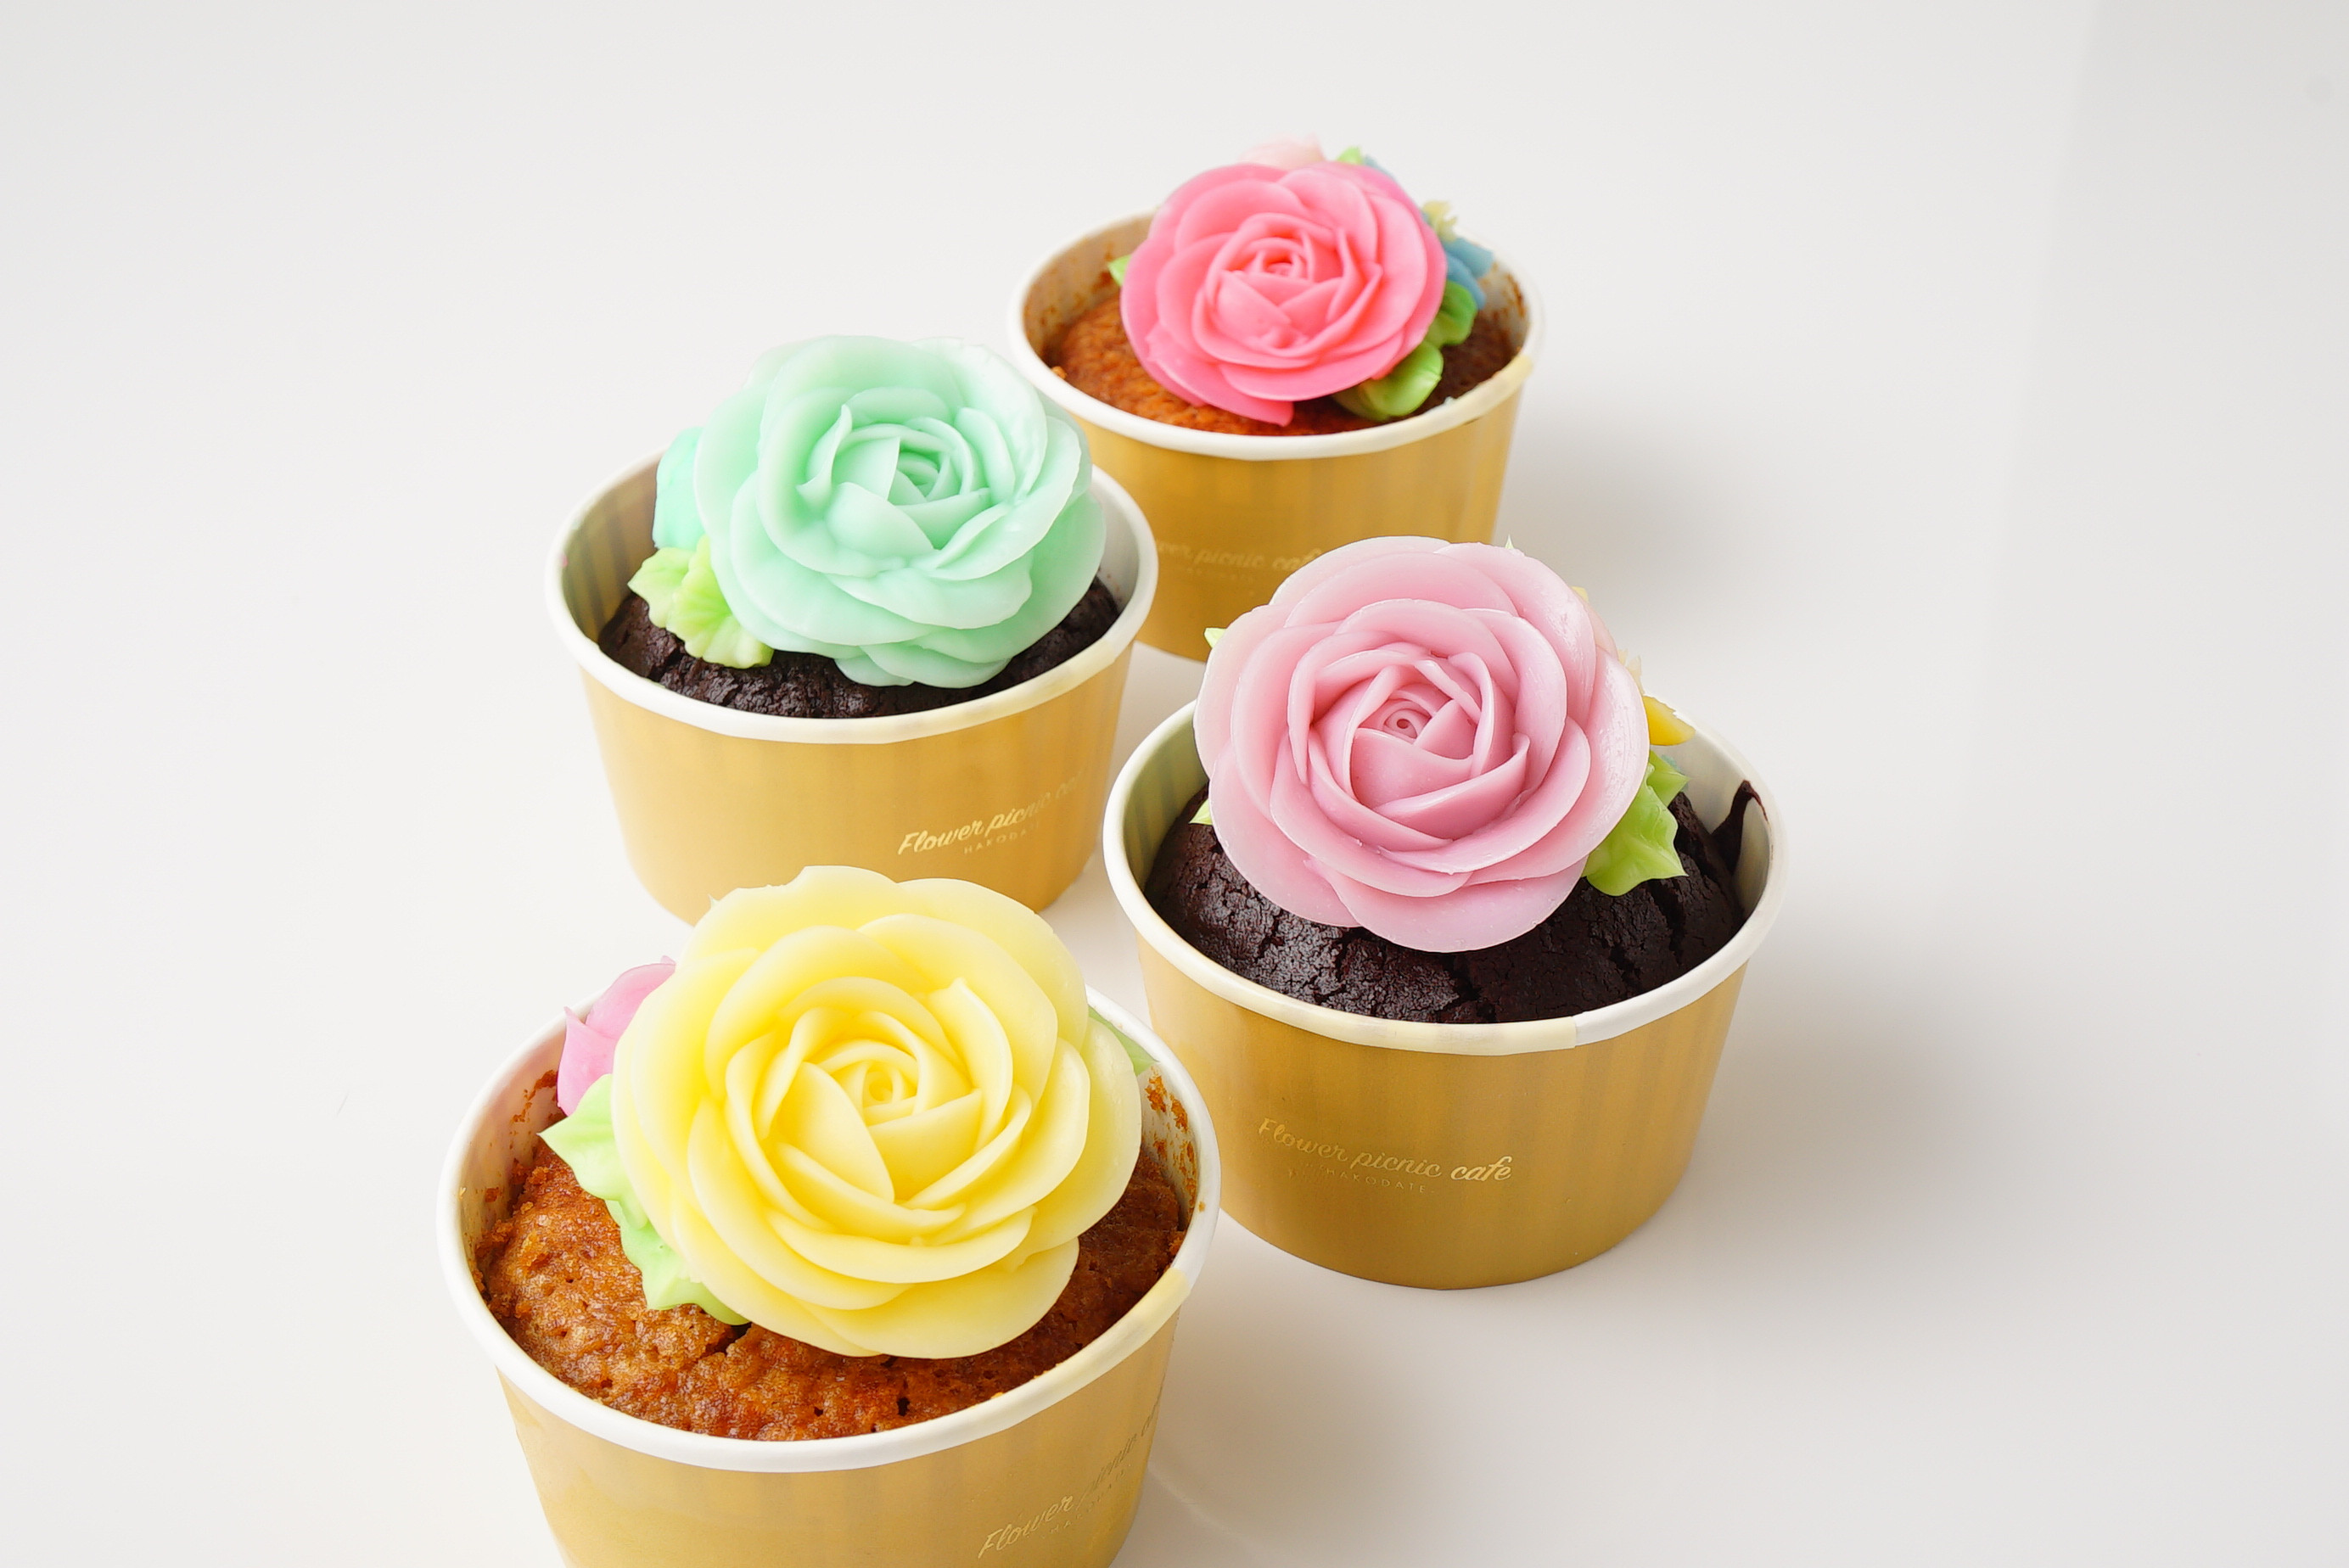 食べられるお花のカップケーキ 4個セット Flower Picnic Cafe Hakodate Cake Jp